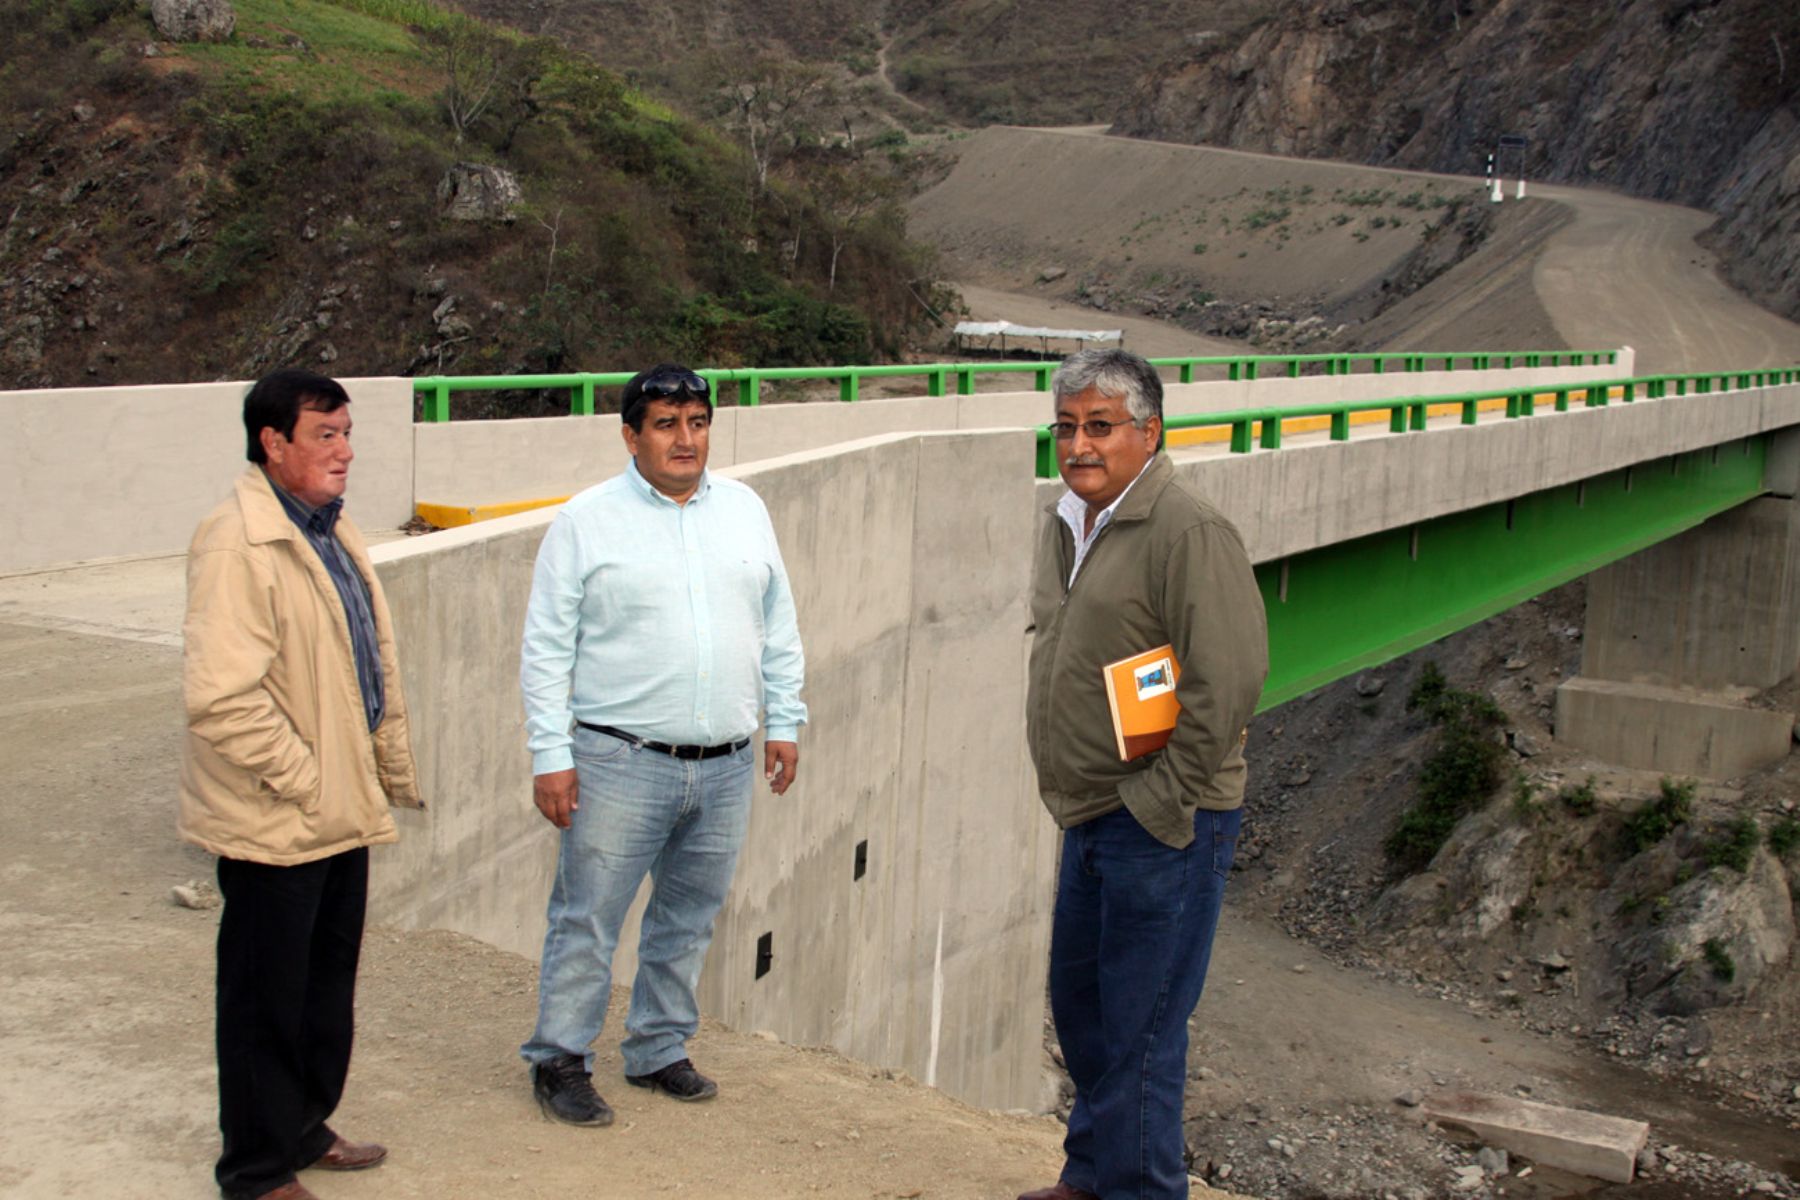 El presidente regional de Lambayeque, Humberto Acuña, inspeccionó puentes construidos en la sierra lambayecana.